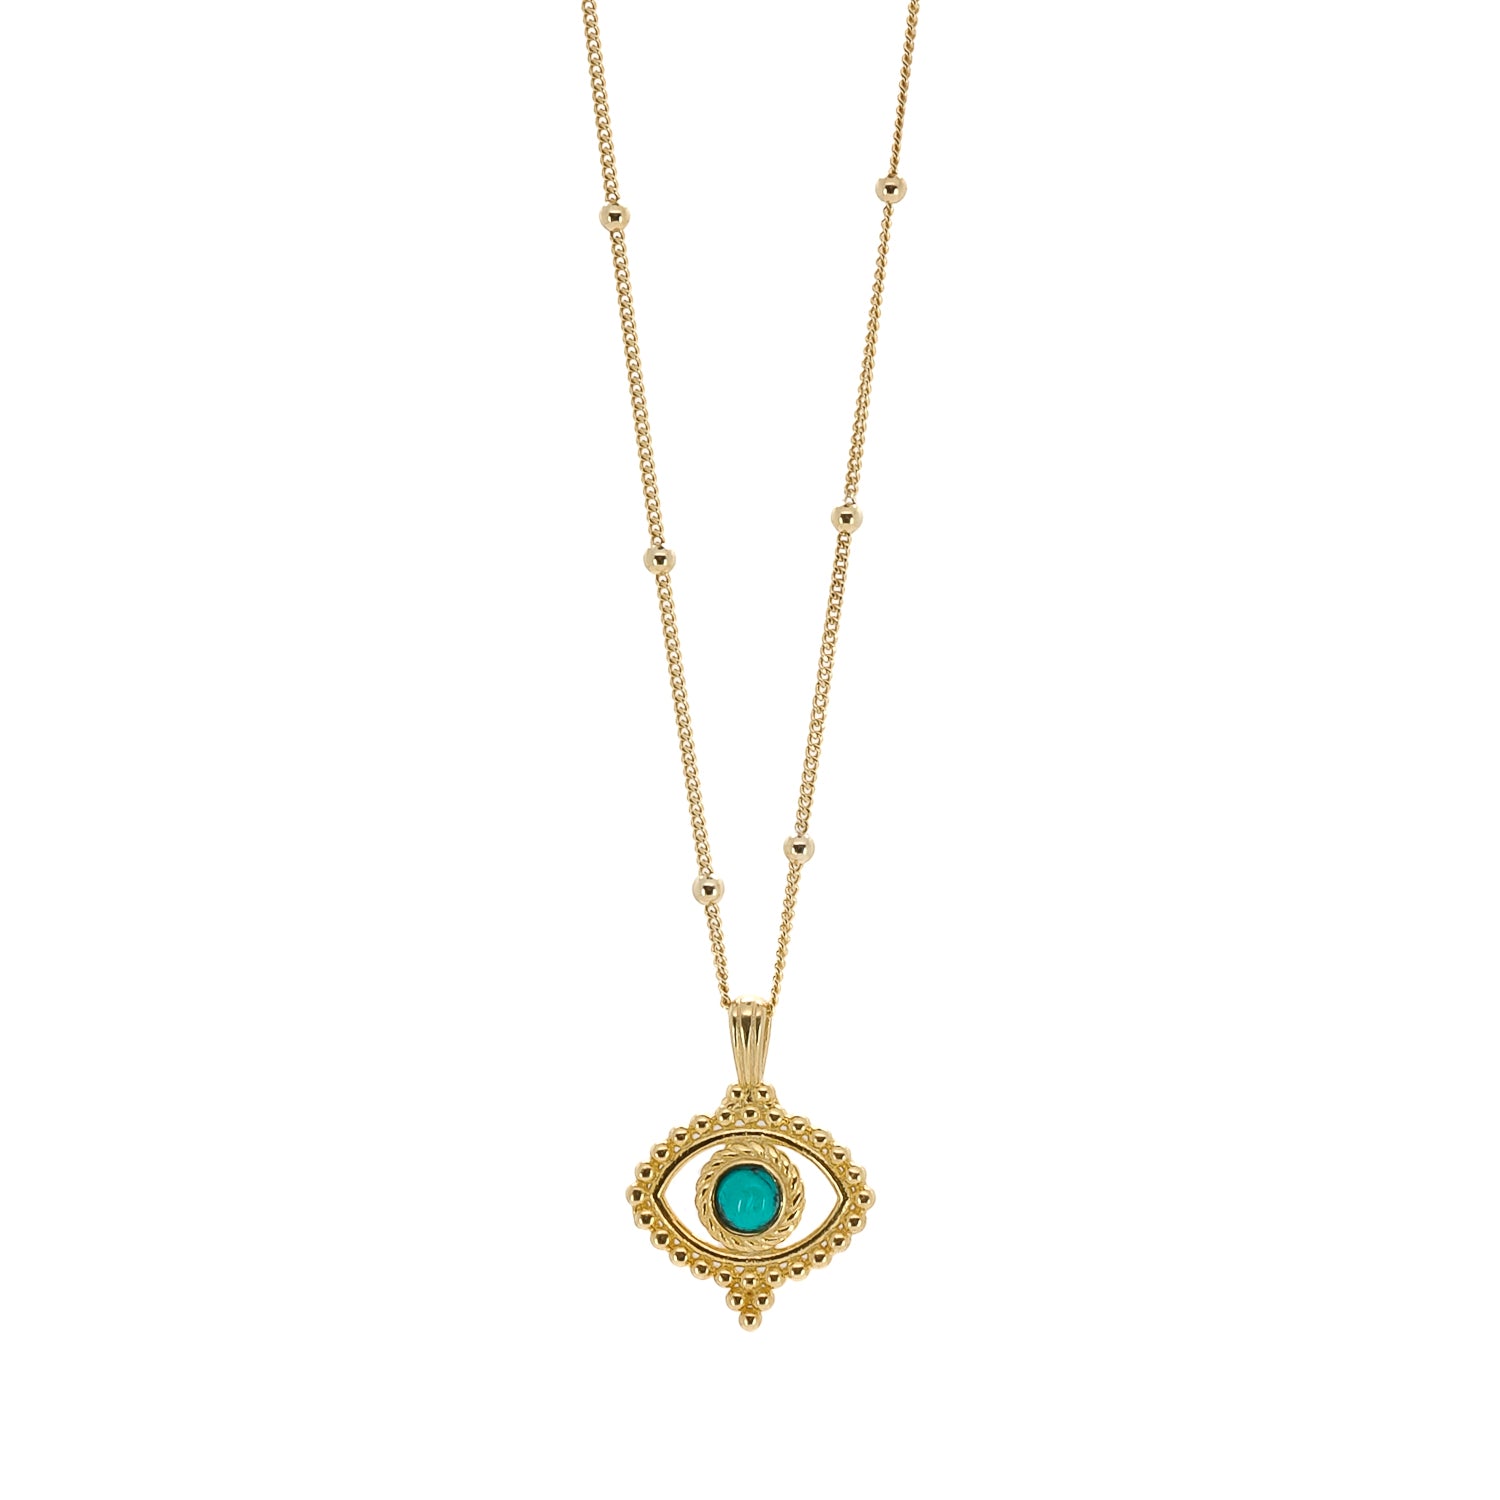 Cherished Symbol: Model Wearing Turquoise Evil Eye Gold Necklace